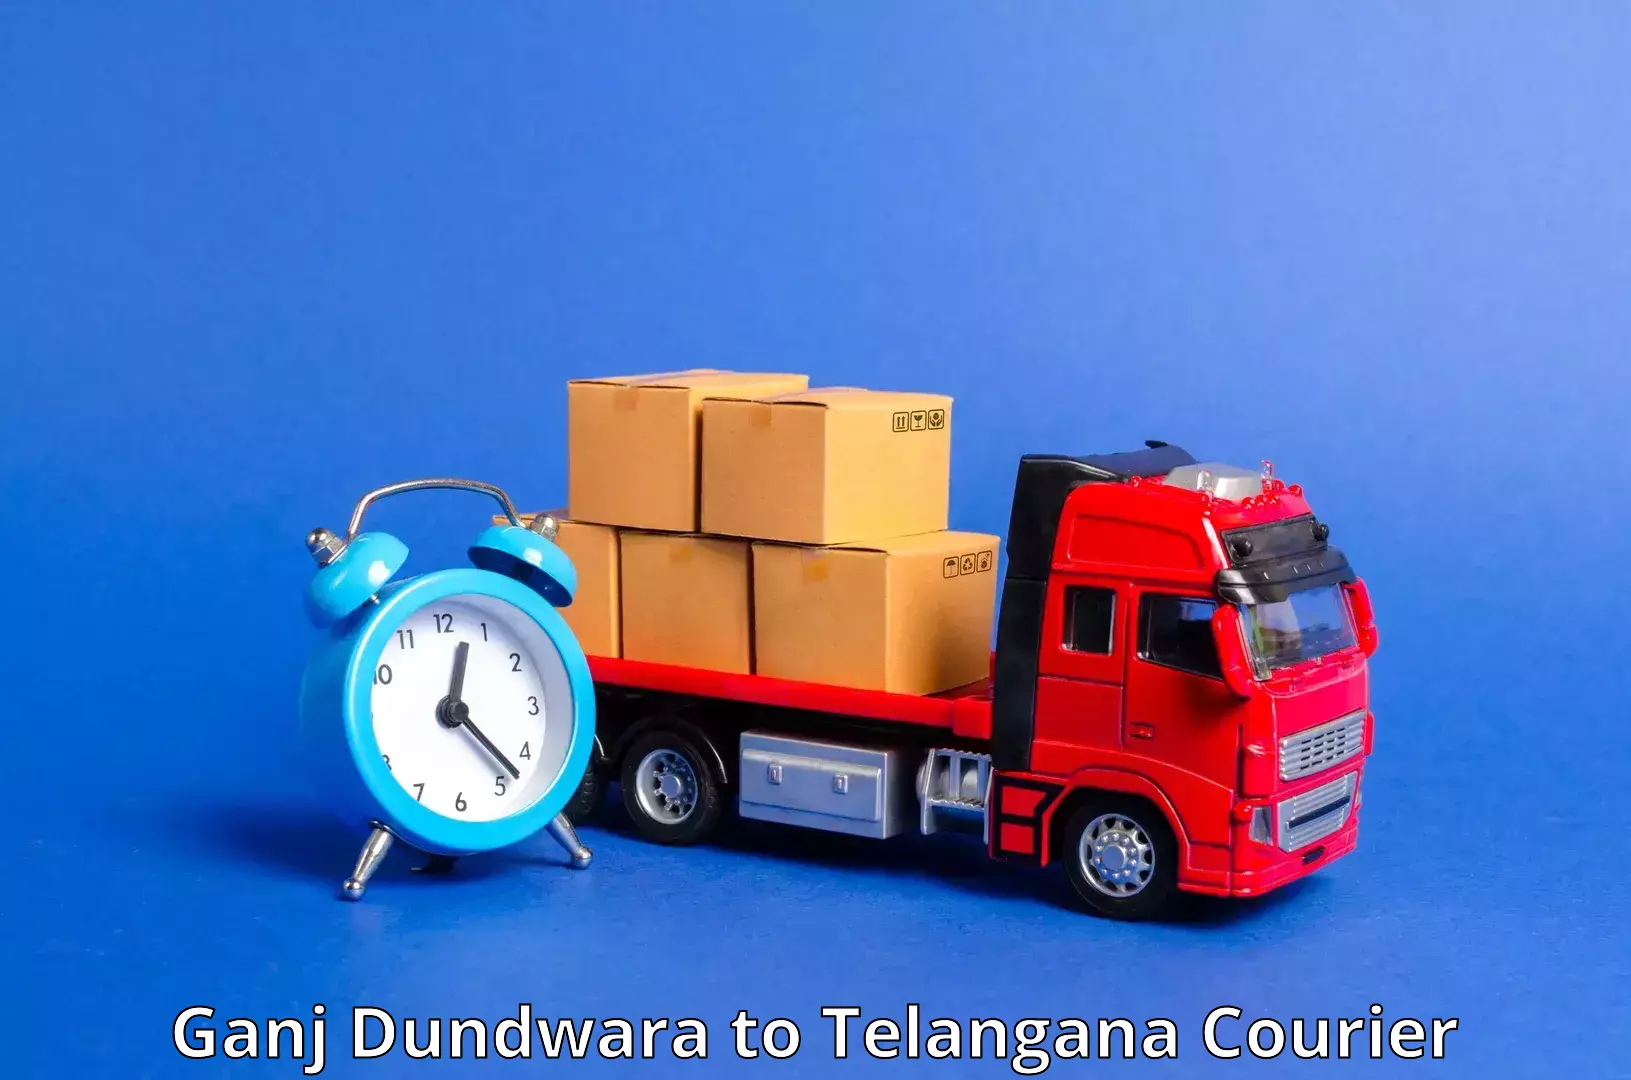 Modern delivery methods Ganj Dundwara to Madgulapally